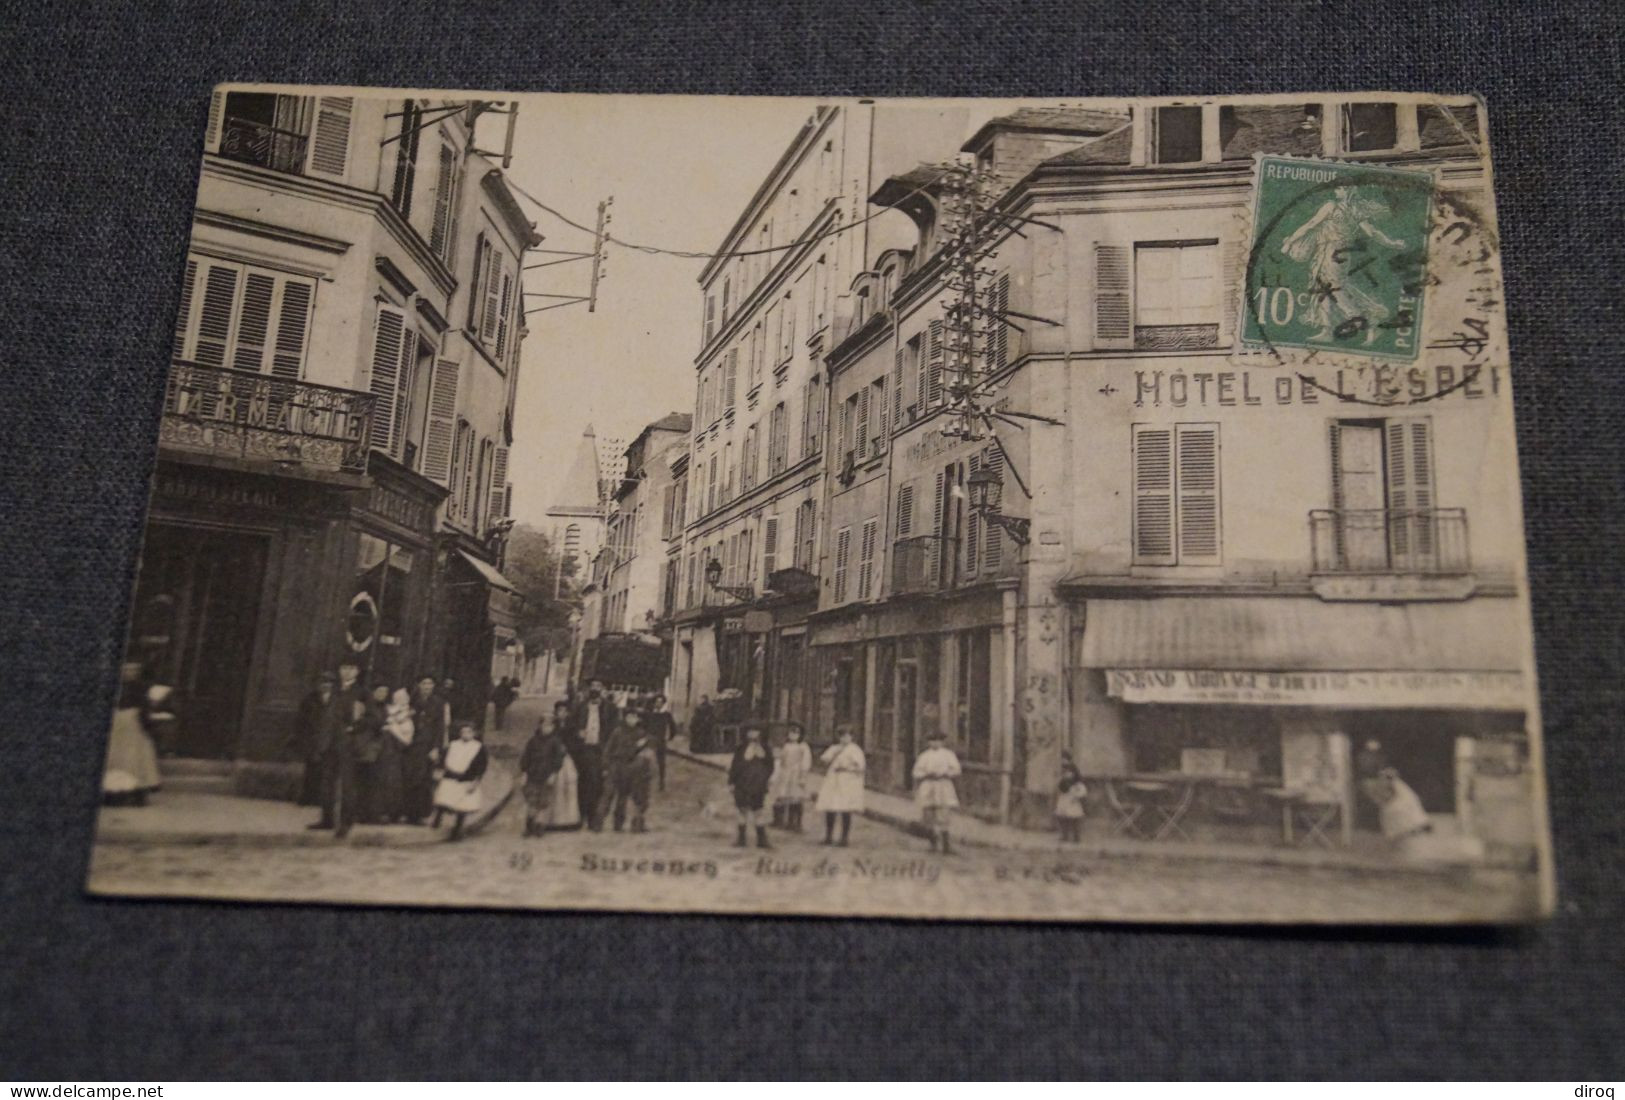 Très Belle Ancienne Carte De Suresnes,1922,rue De Neuilly - Suresnes